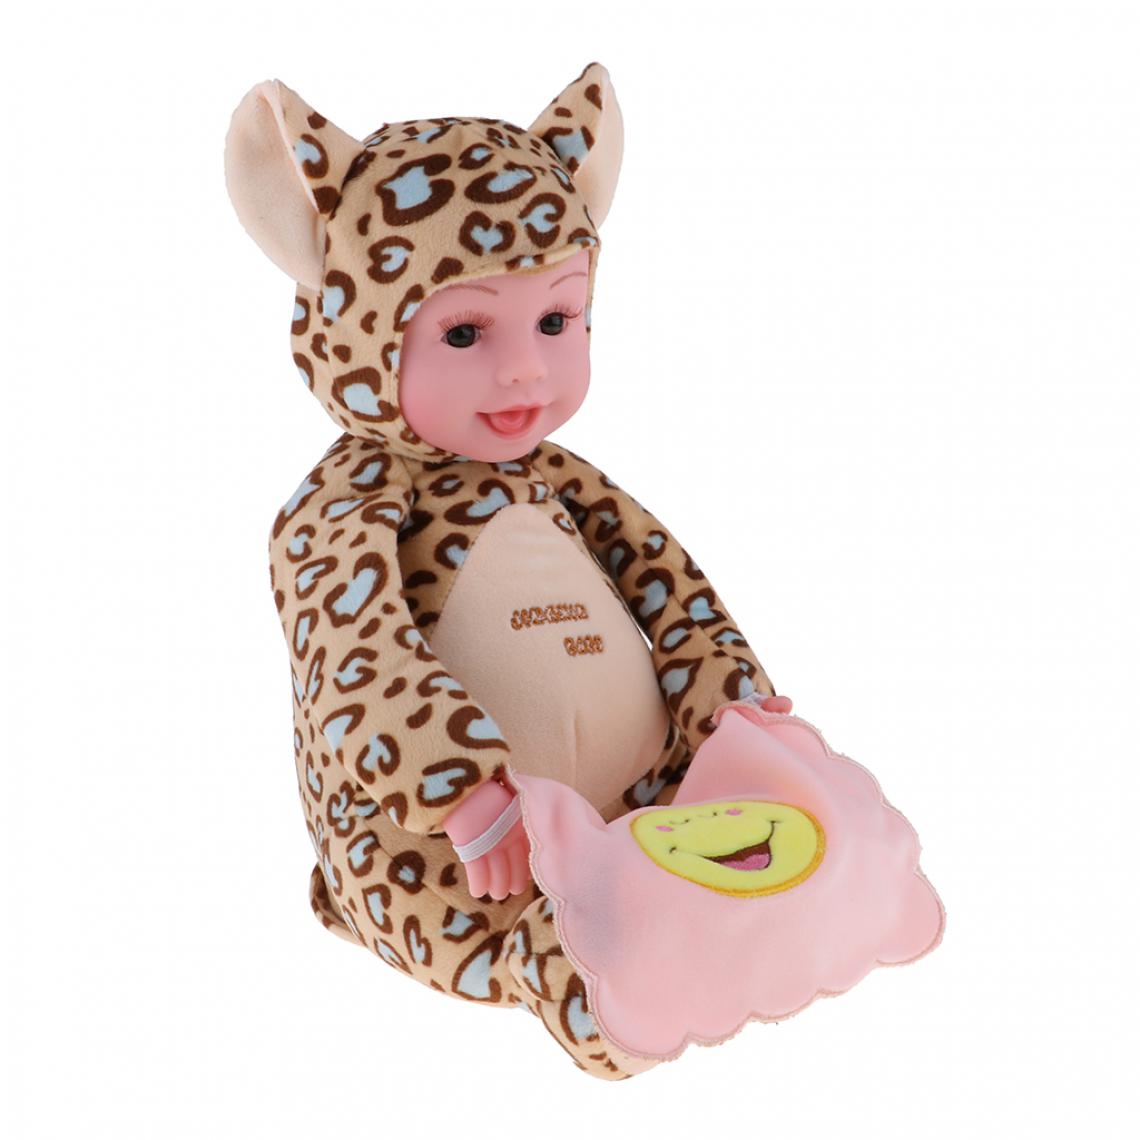 marque generique - 50cm en peluche tacheté vinyle Reborn poupée parler bébé enfants Playmate jouets chien - Poupées